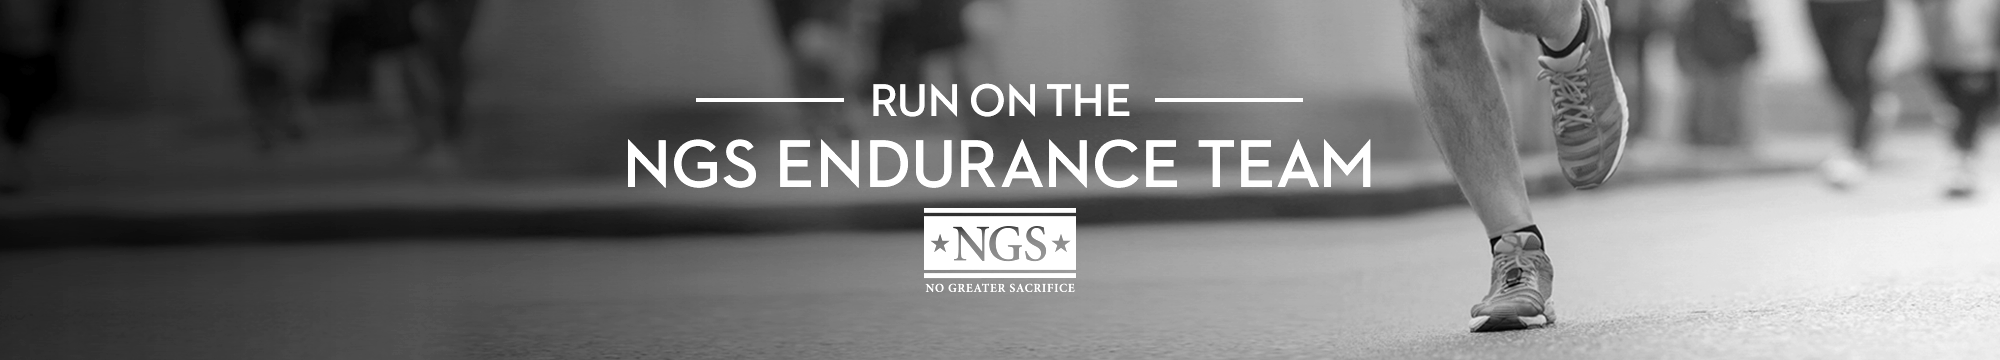 NGS EnduranceRun2015 2000x360 1 0